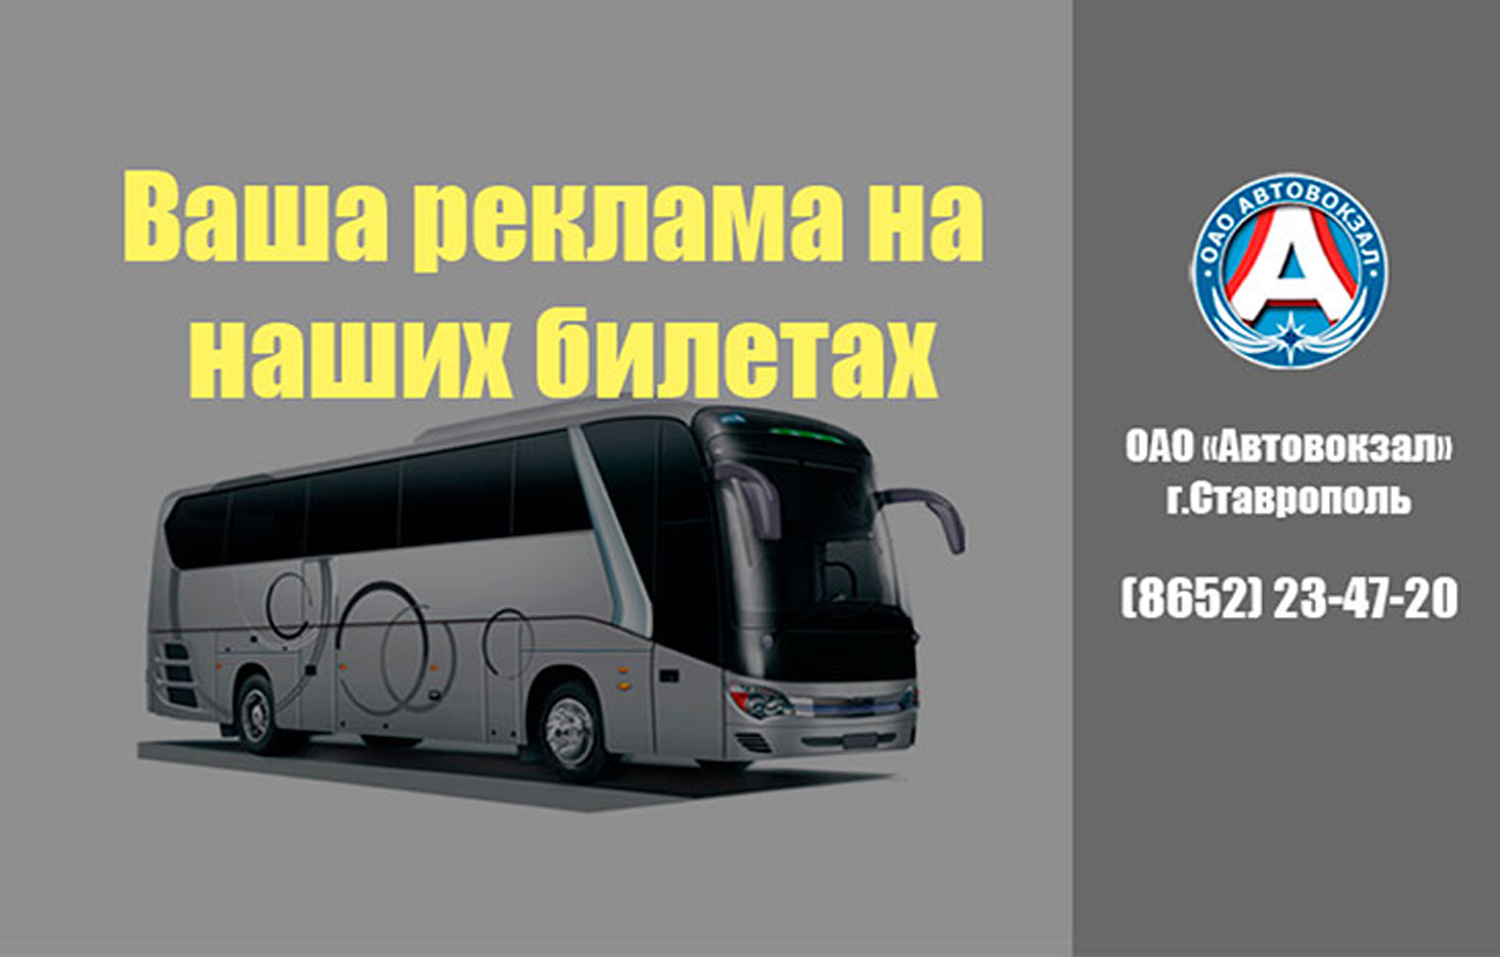 Номер автобуса ставрополь. Ставрополь Волгоград автобус. Список межгородских автобусов Астрахань.